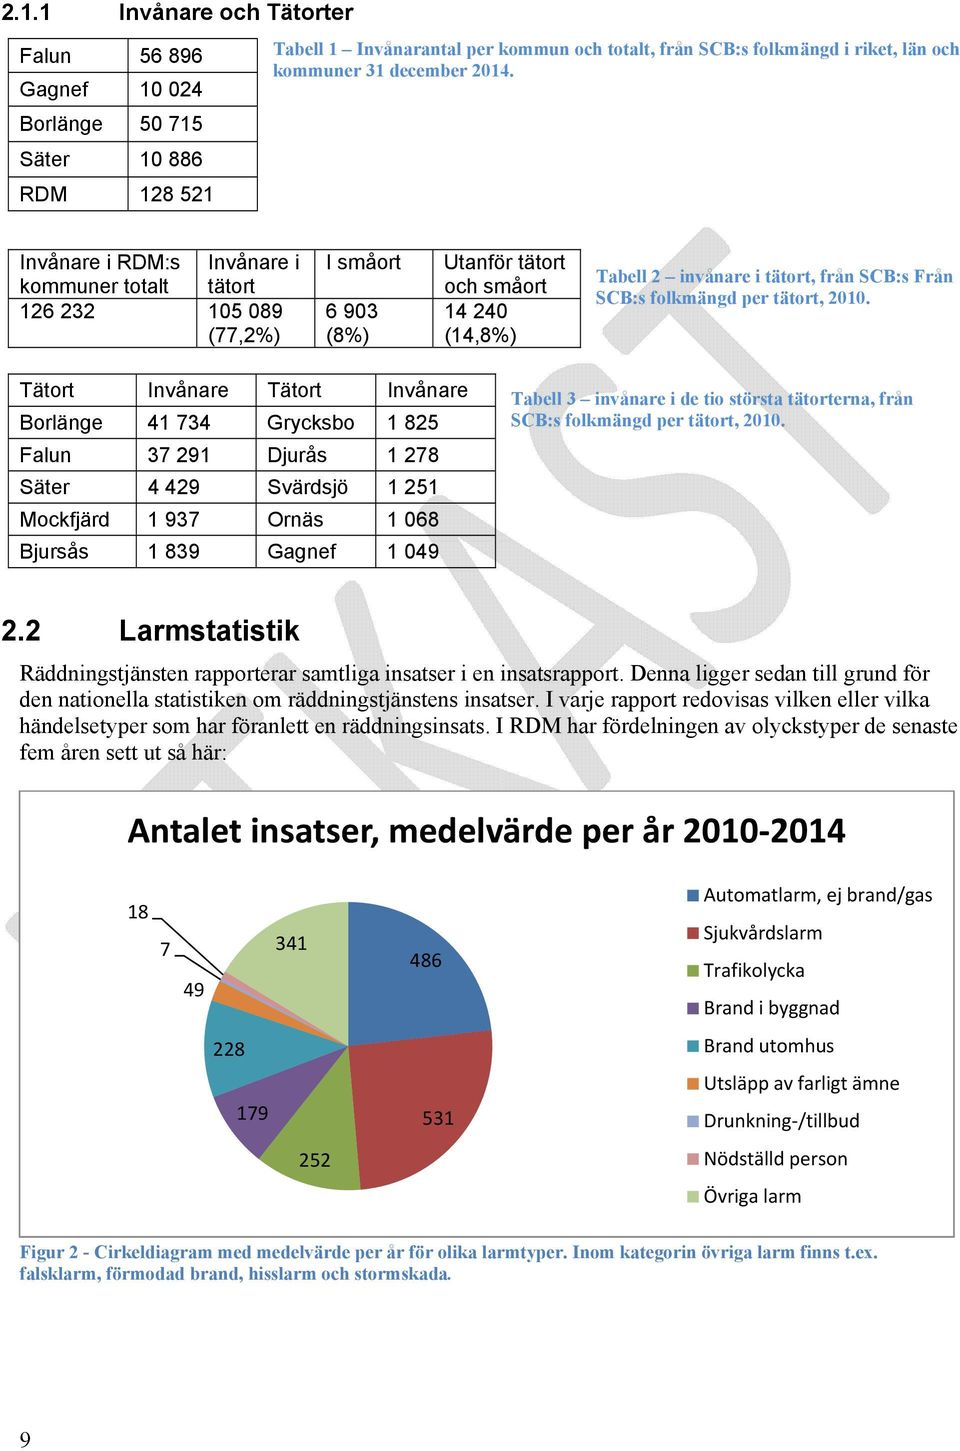 invånare i tätort, från SCB:s Från SCB:s folkmängd per tätort, 2010.